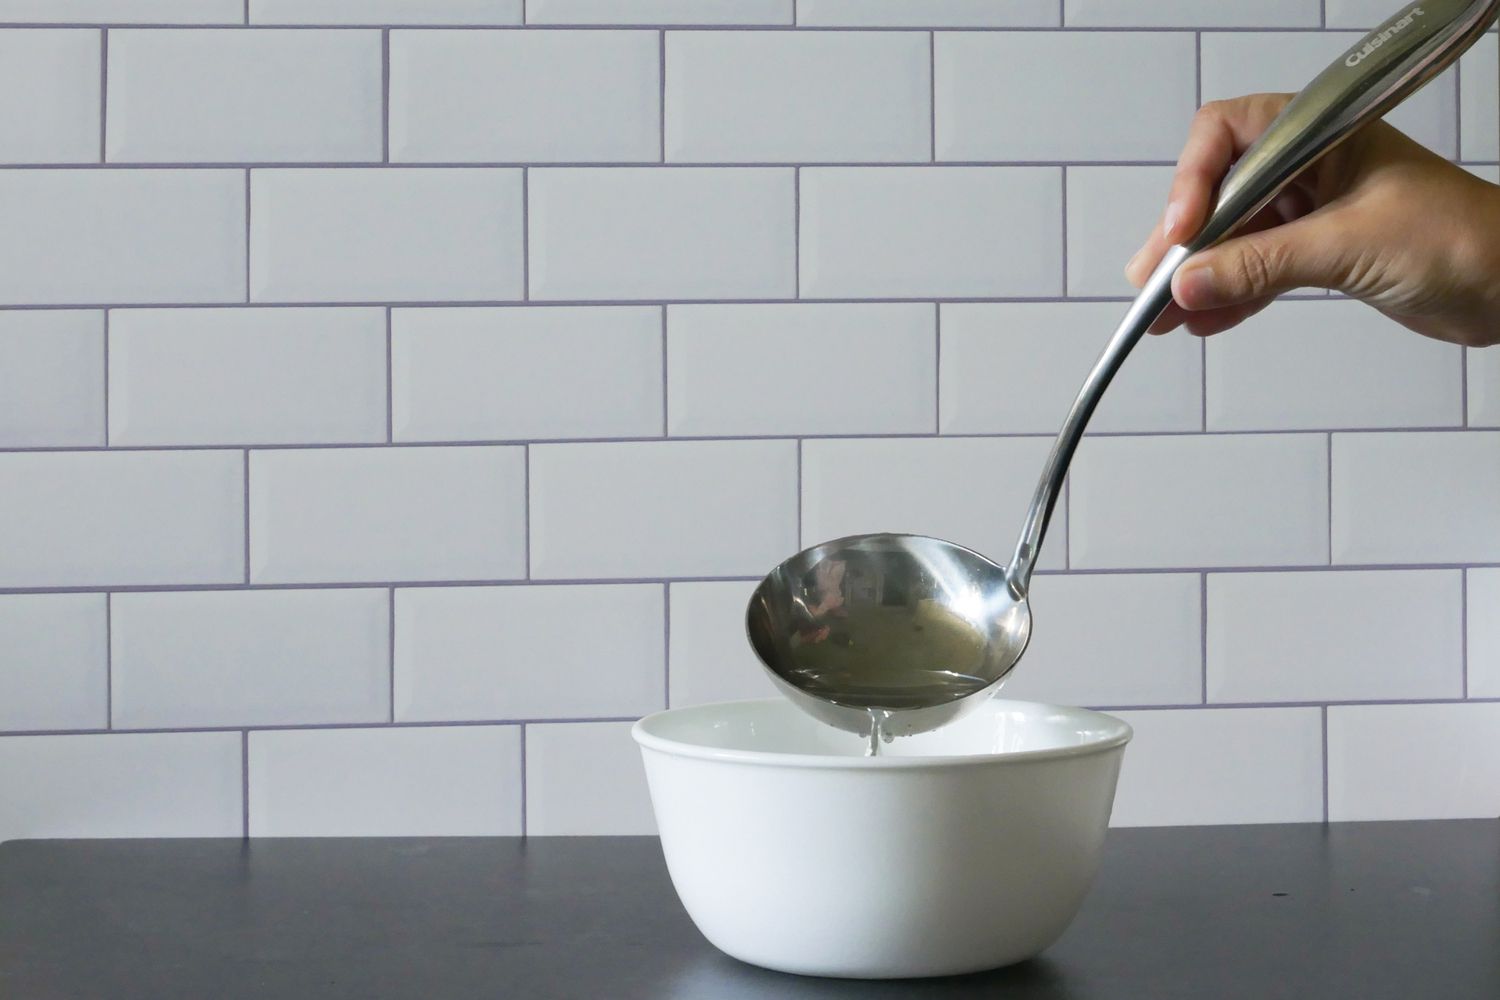 用煮菜勺将水倒进碗里，展示碗的形状。